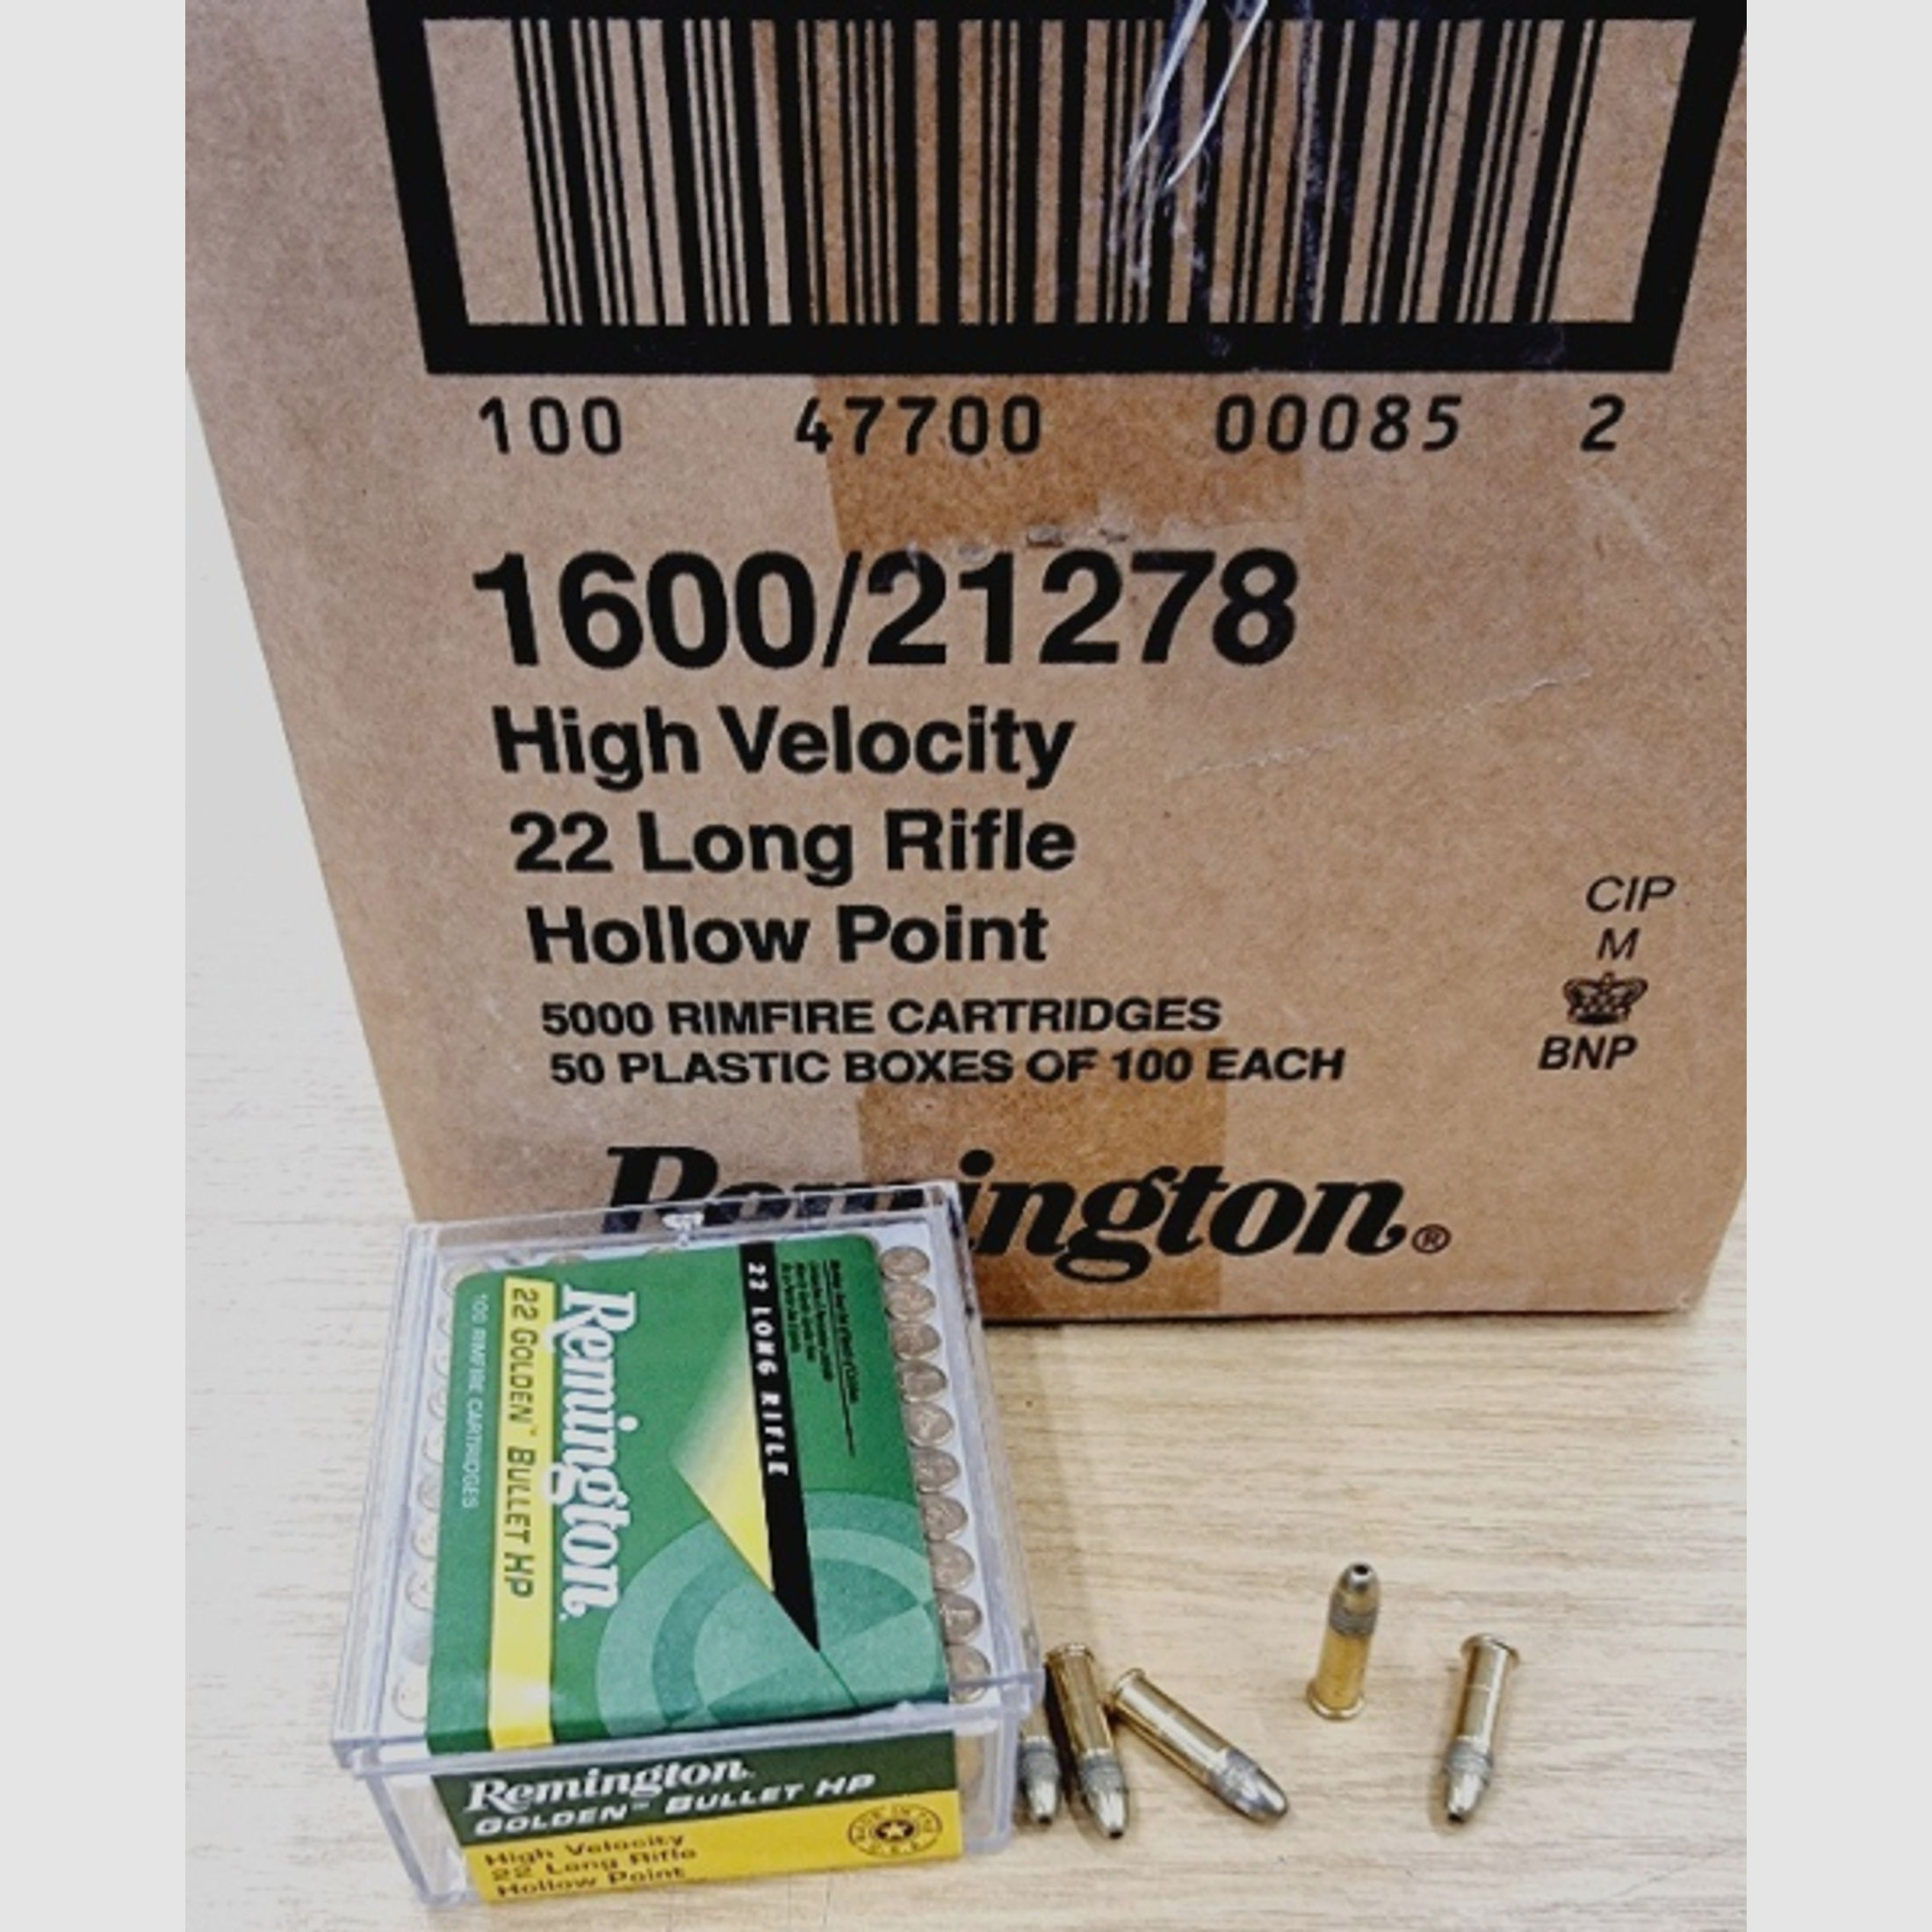 .22LR/36grs HP Remington Golden Bullet HV verkupfert 5000 Stk. #21278# Angebot !!